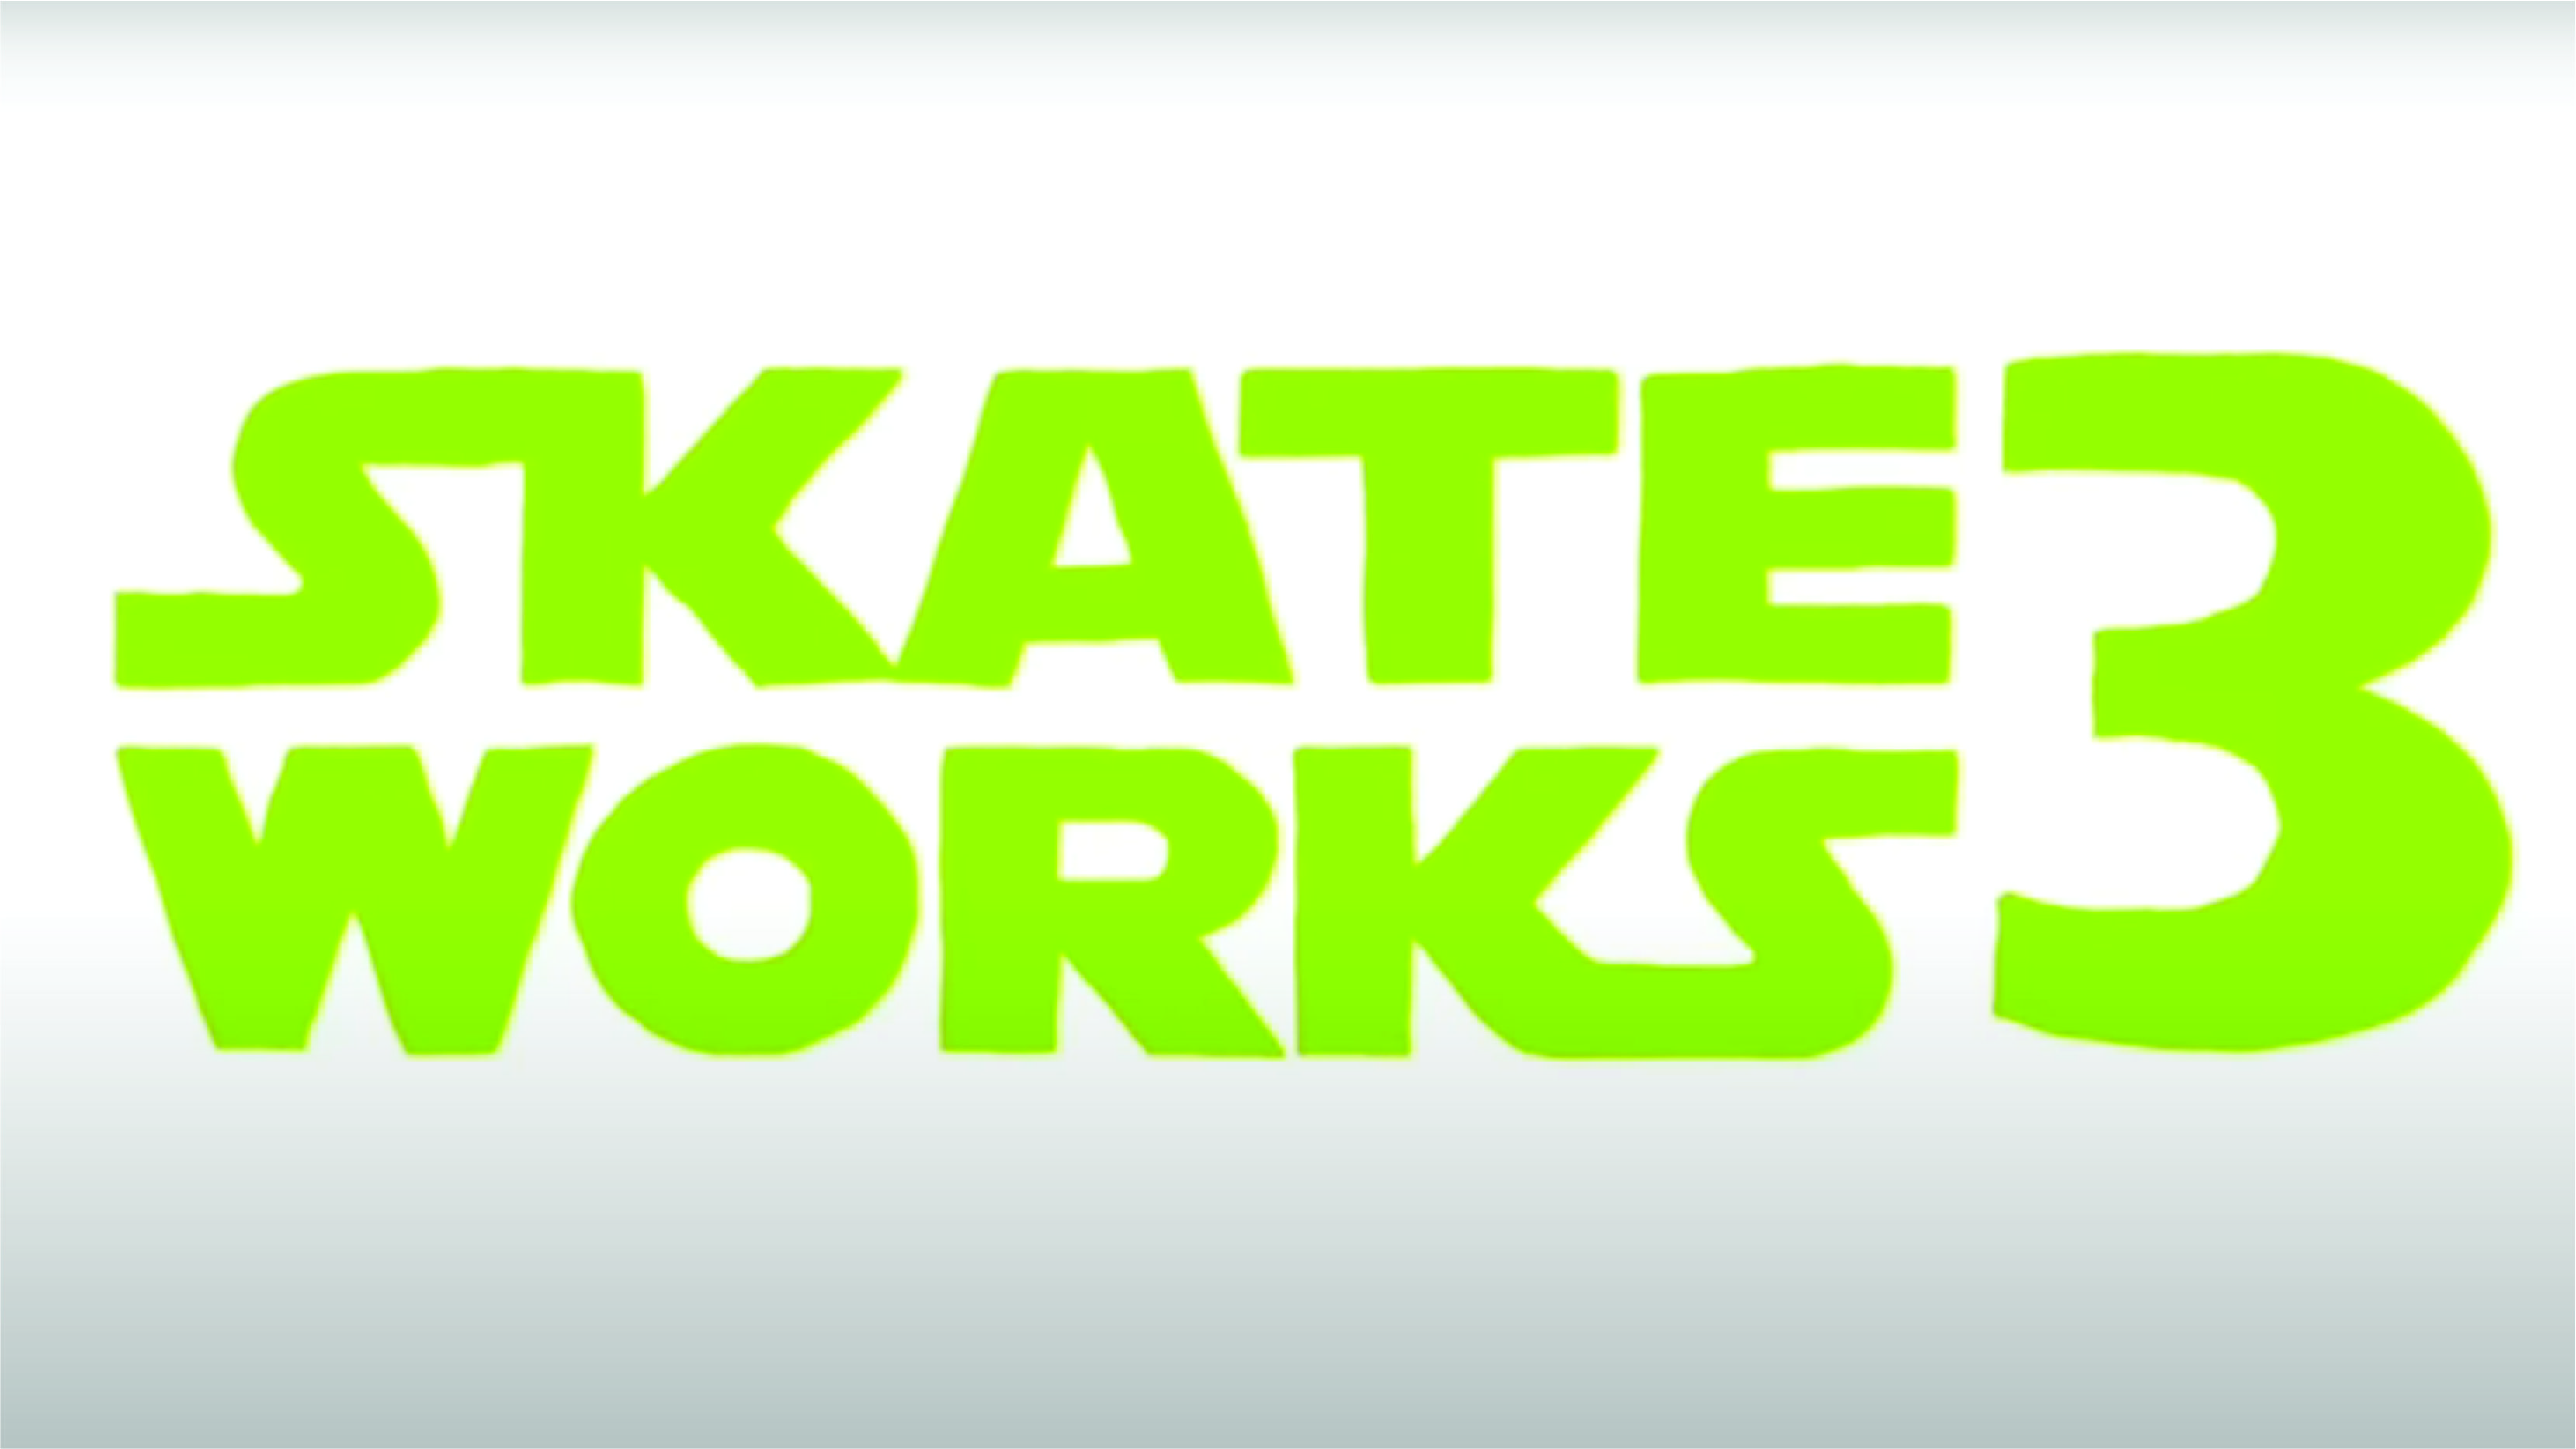 Skateworks - 3 cover art